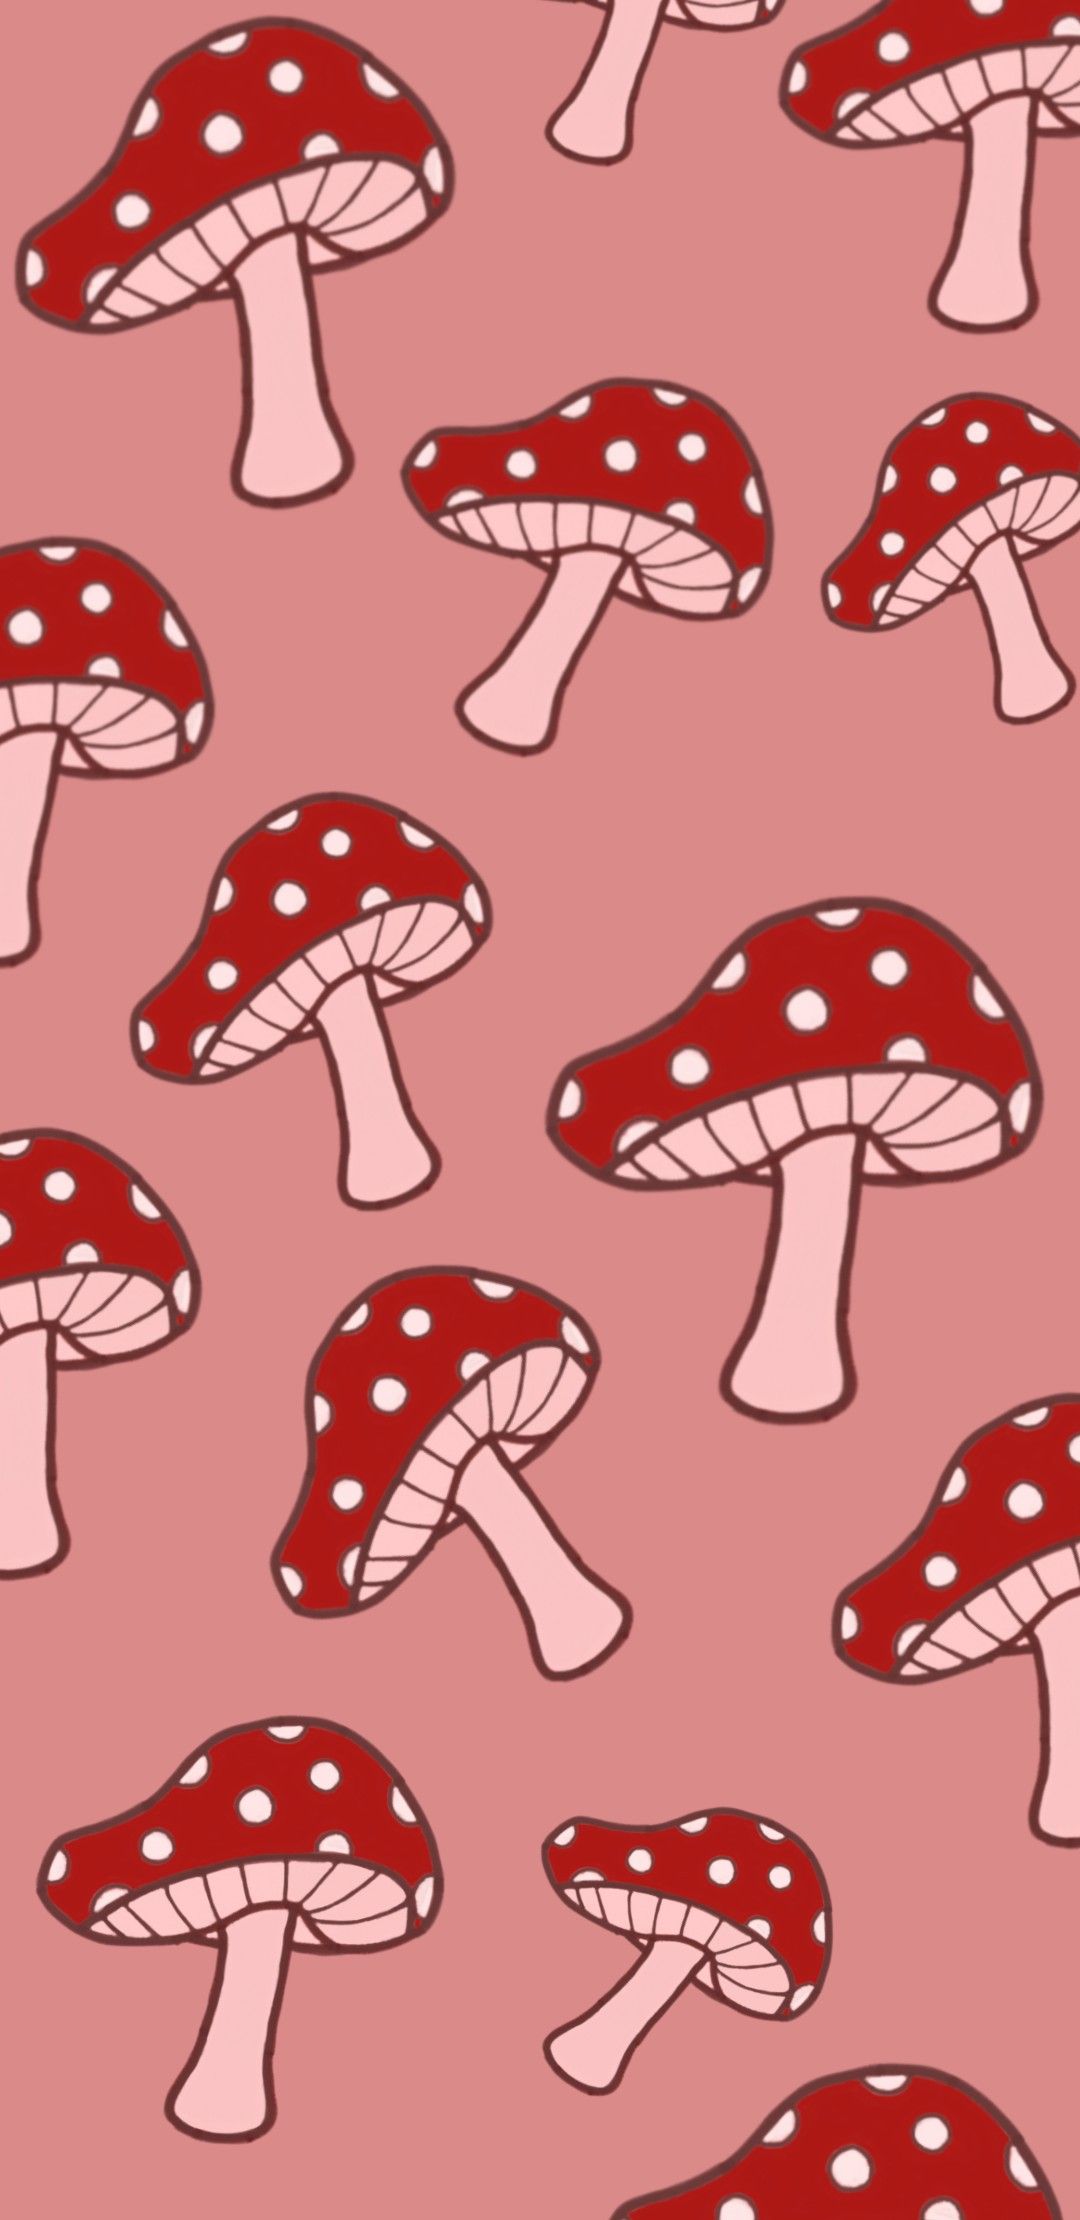 Mushroom wallpaper. Mushroom wallpaper, Fairy wallpaper, iPhone wallpaper pattern